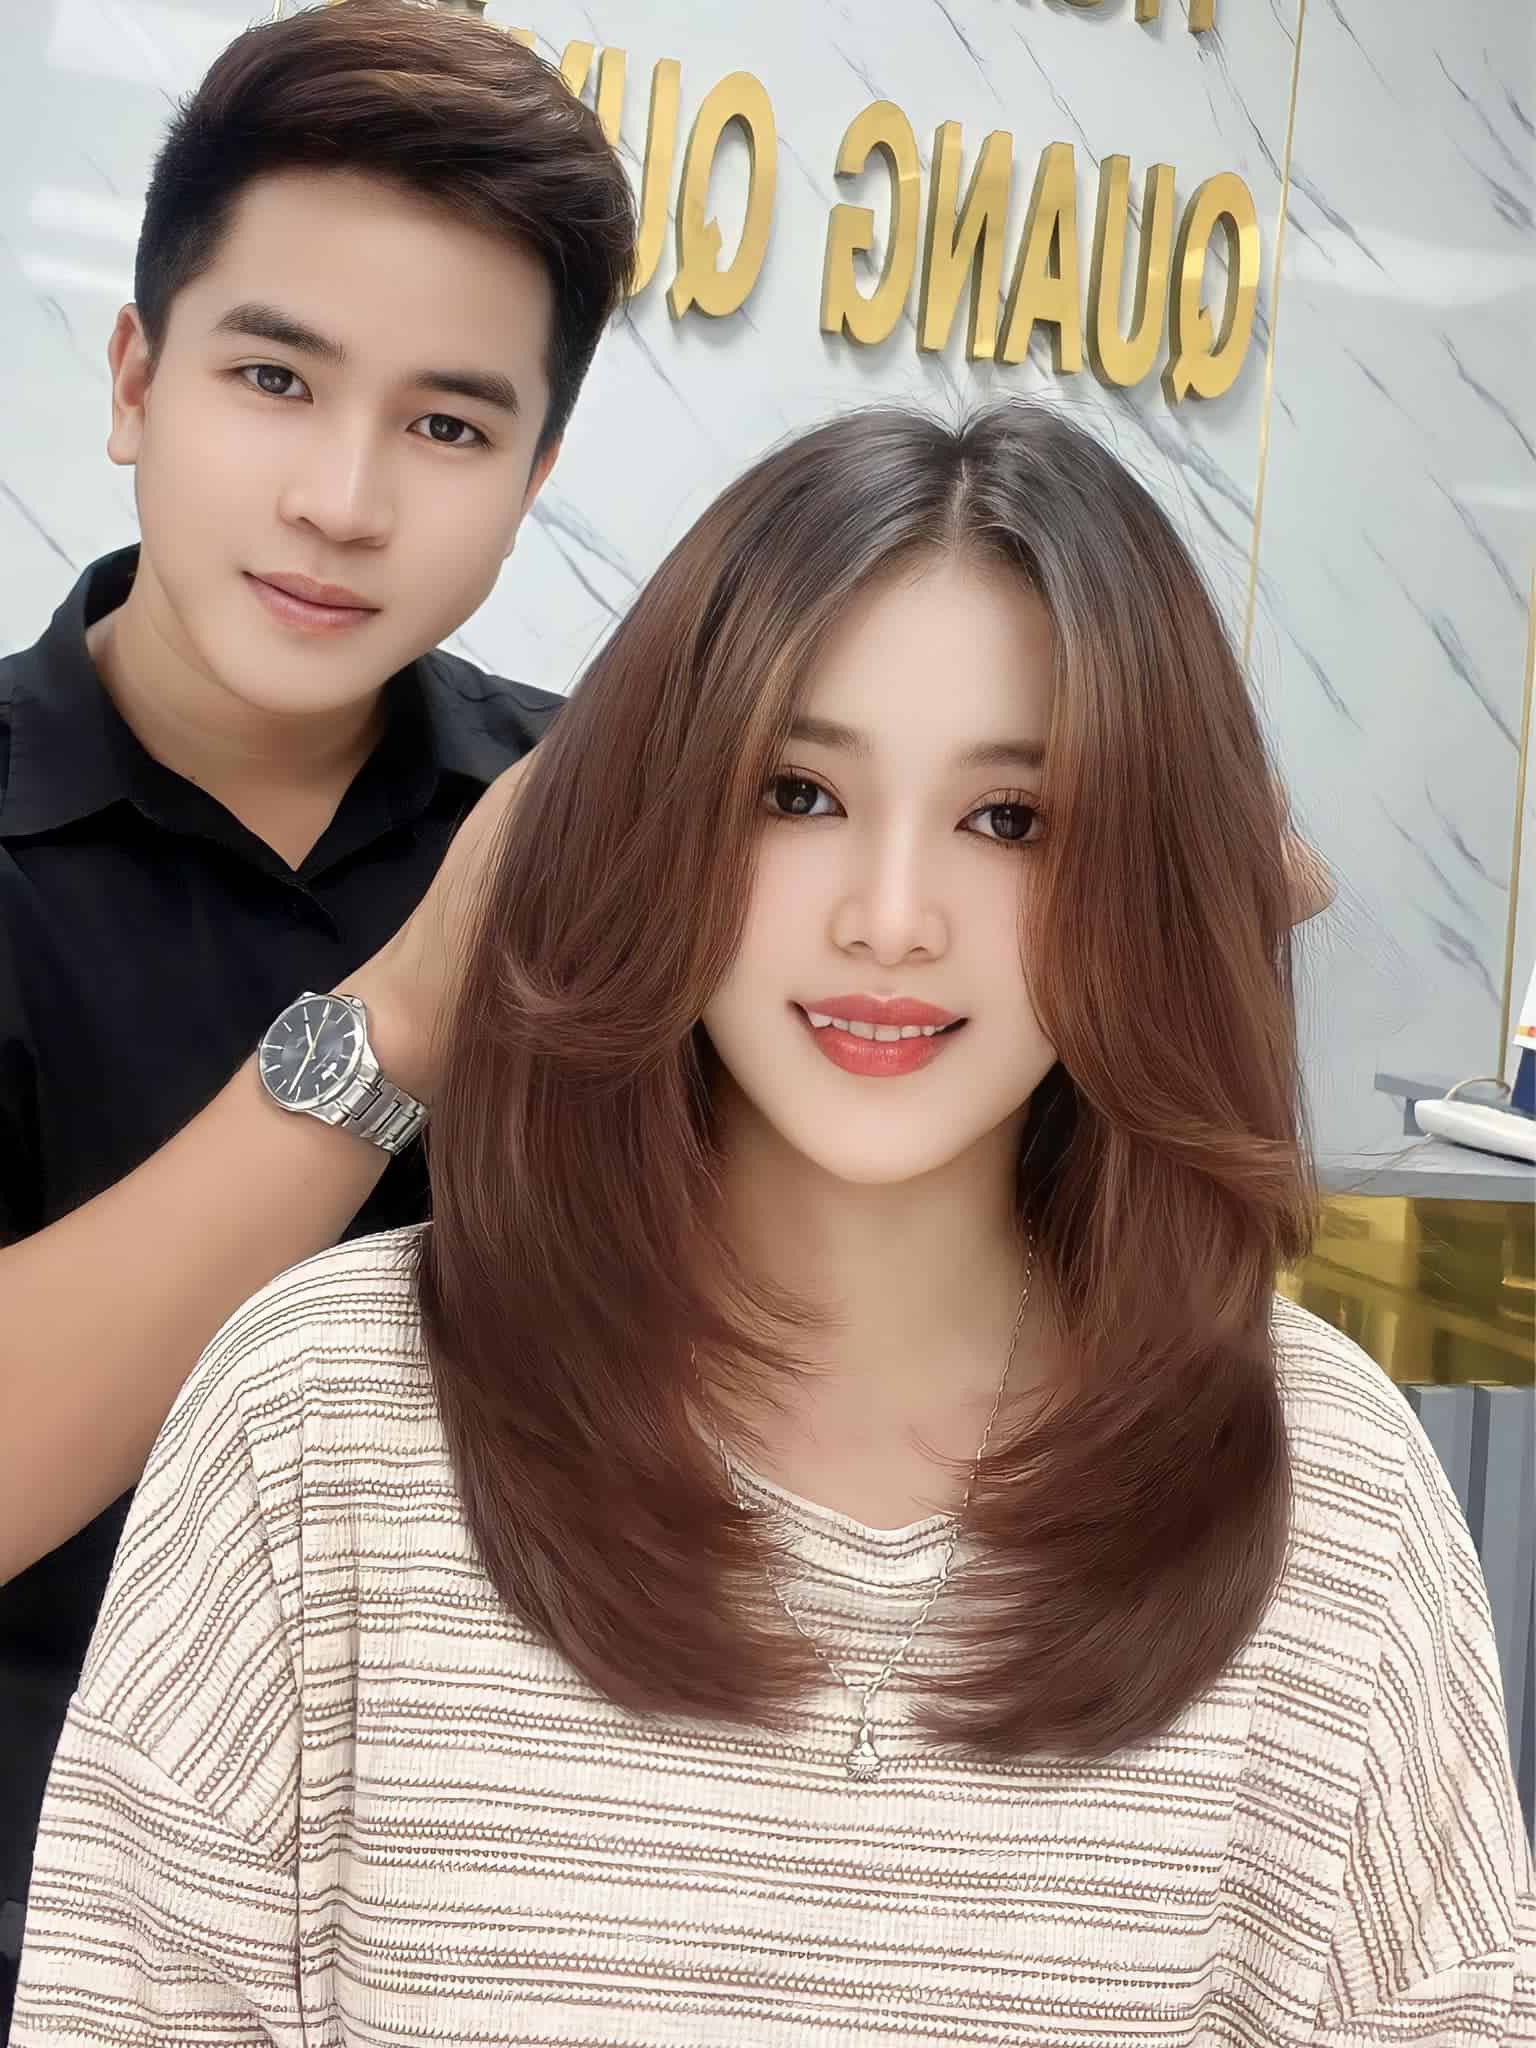 Quang Quyết Hair Salon